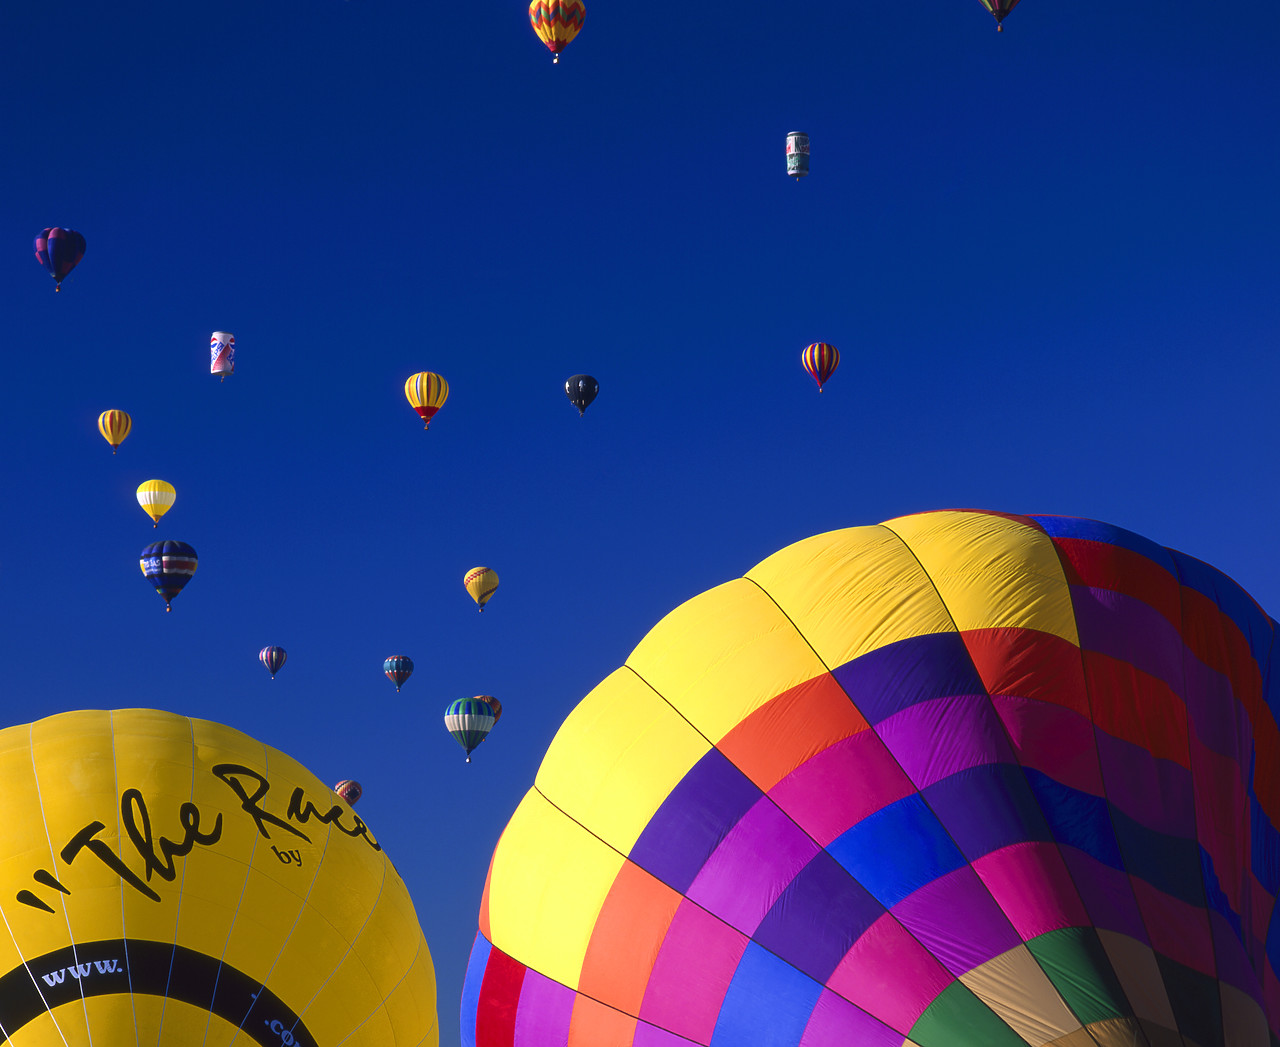 #990601-2 - Hot Air Balloons, Albuquerque, New Mexico, USA